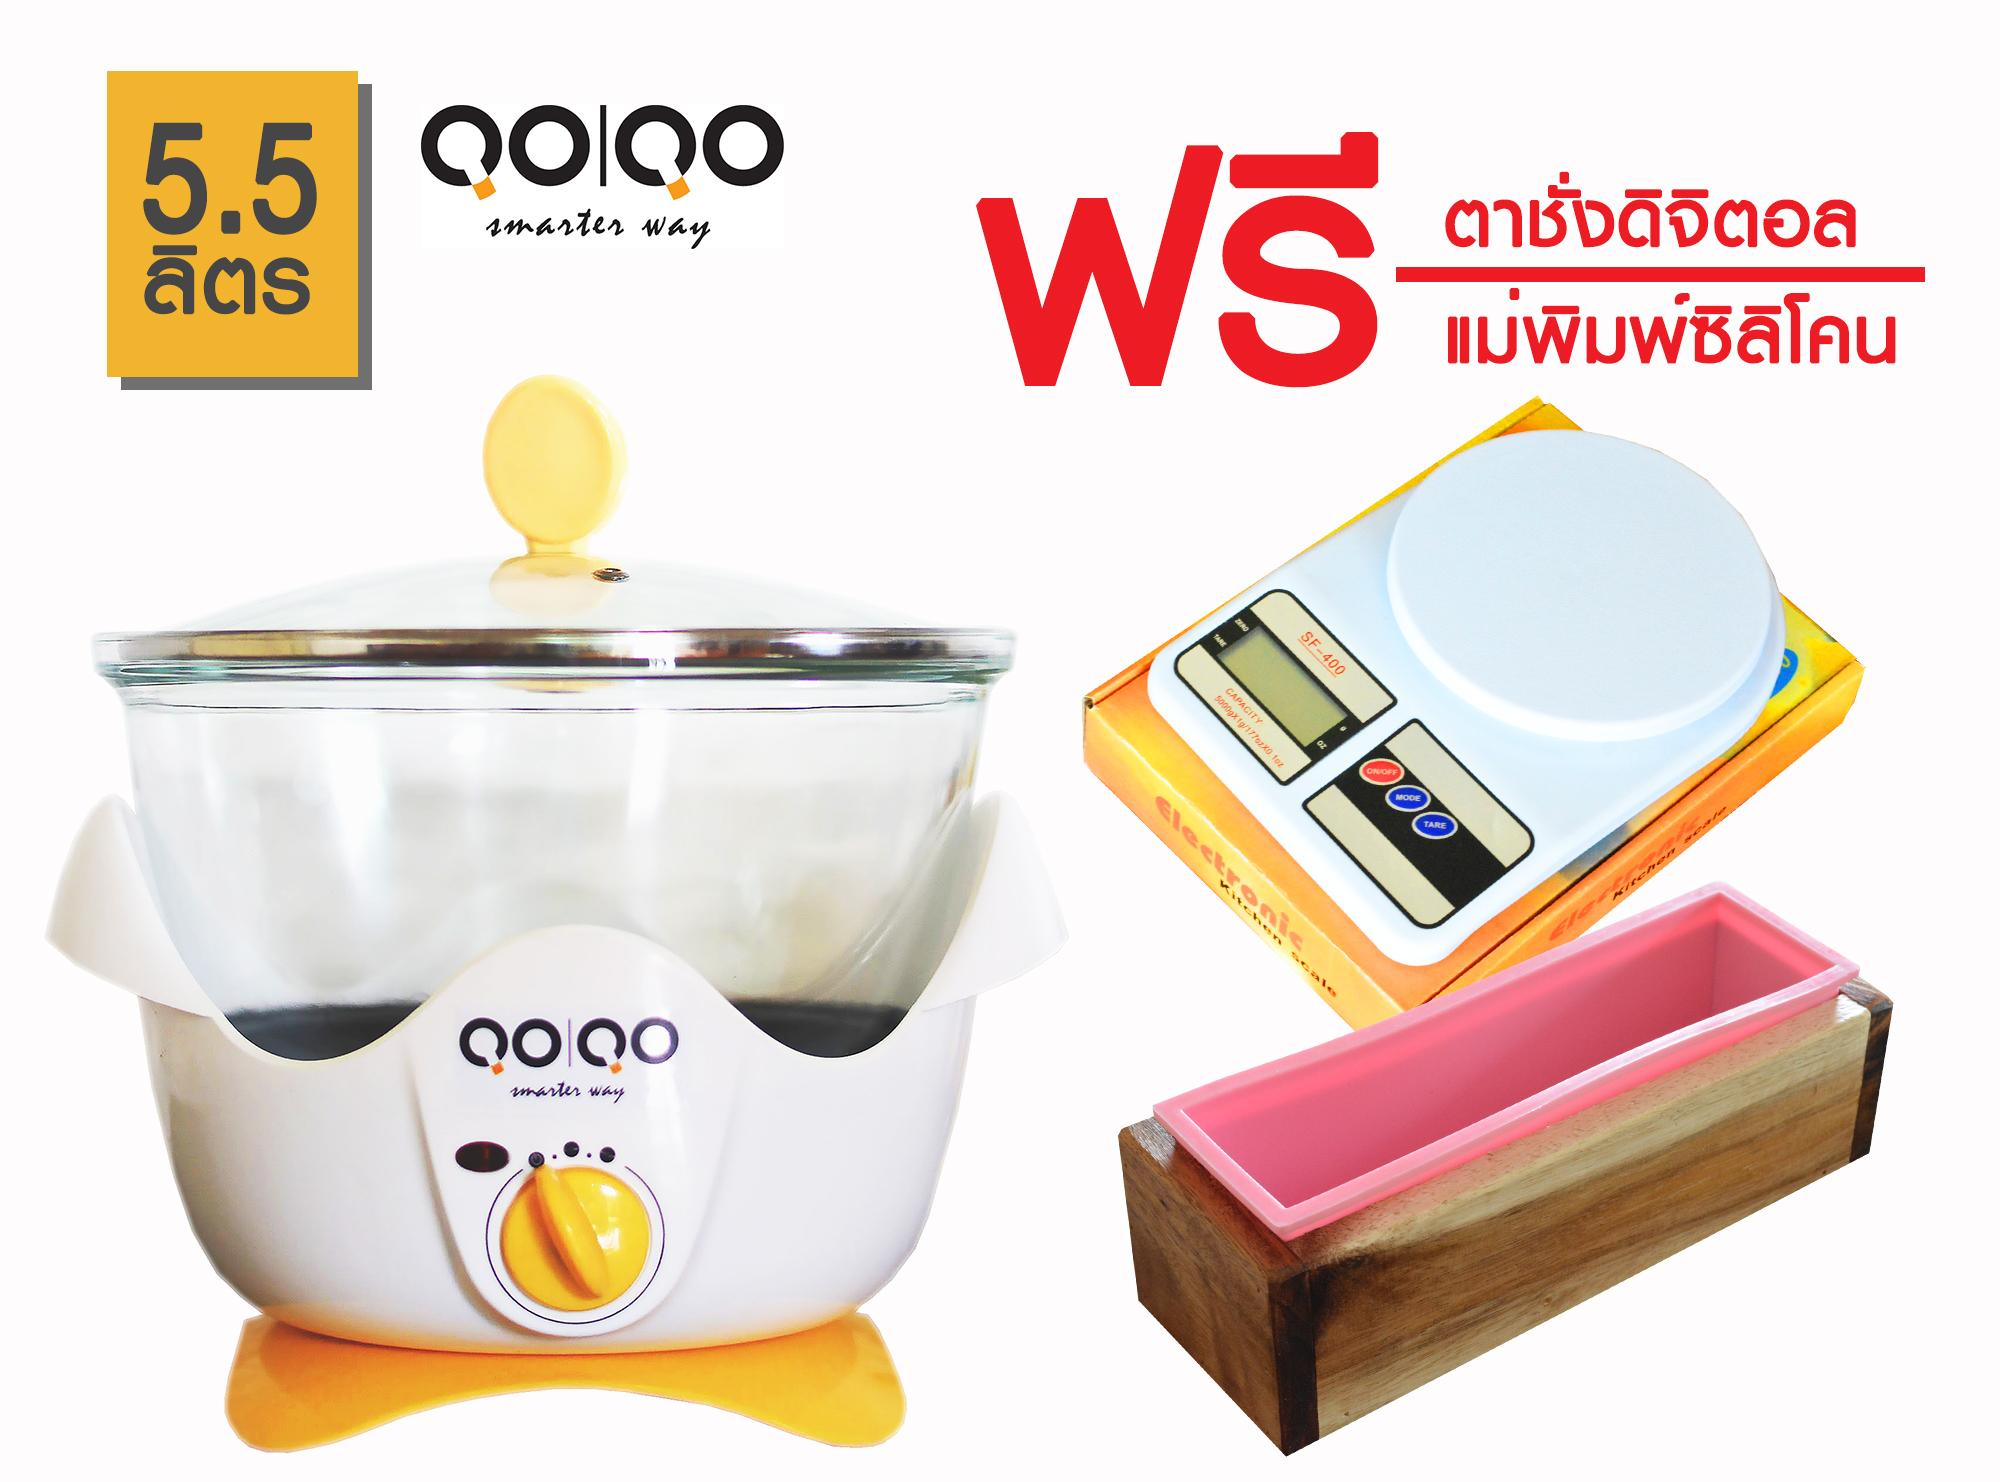 QOQO หม้อตุ๋นแก้ว slow cooker 5.5 ลิตร แถมฟรีตาชั่งดิจิตอล +ชุดแม่พิมพ์ซิลิโคน